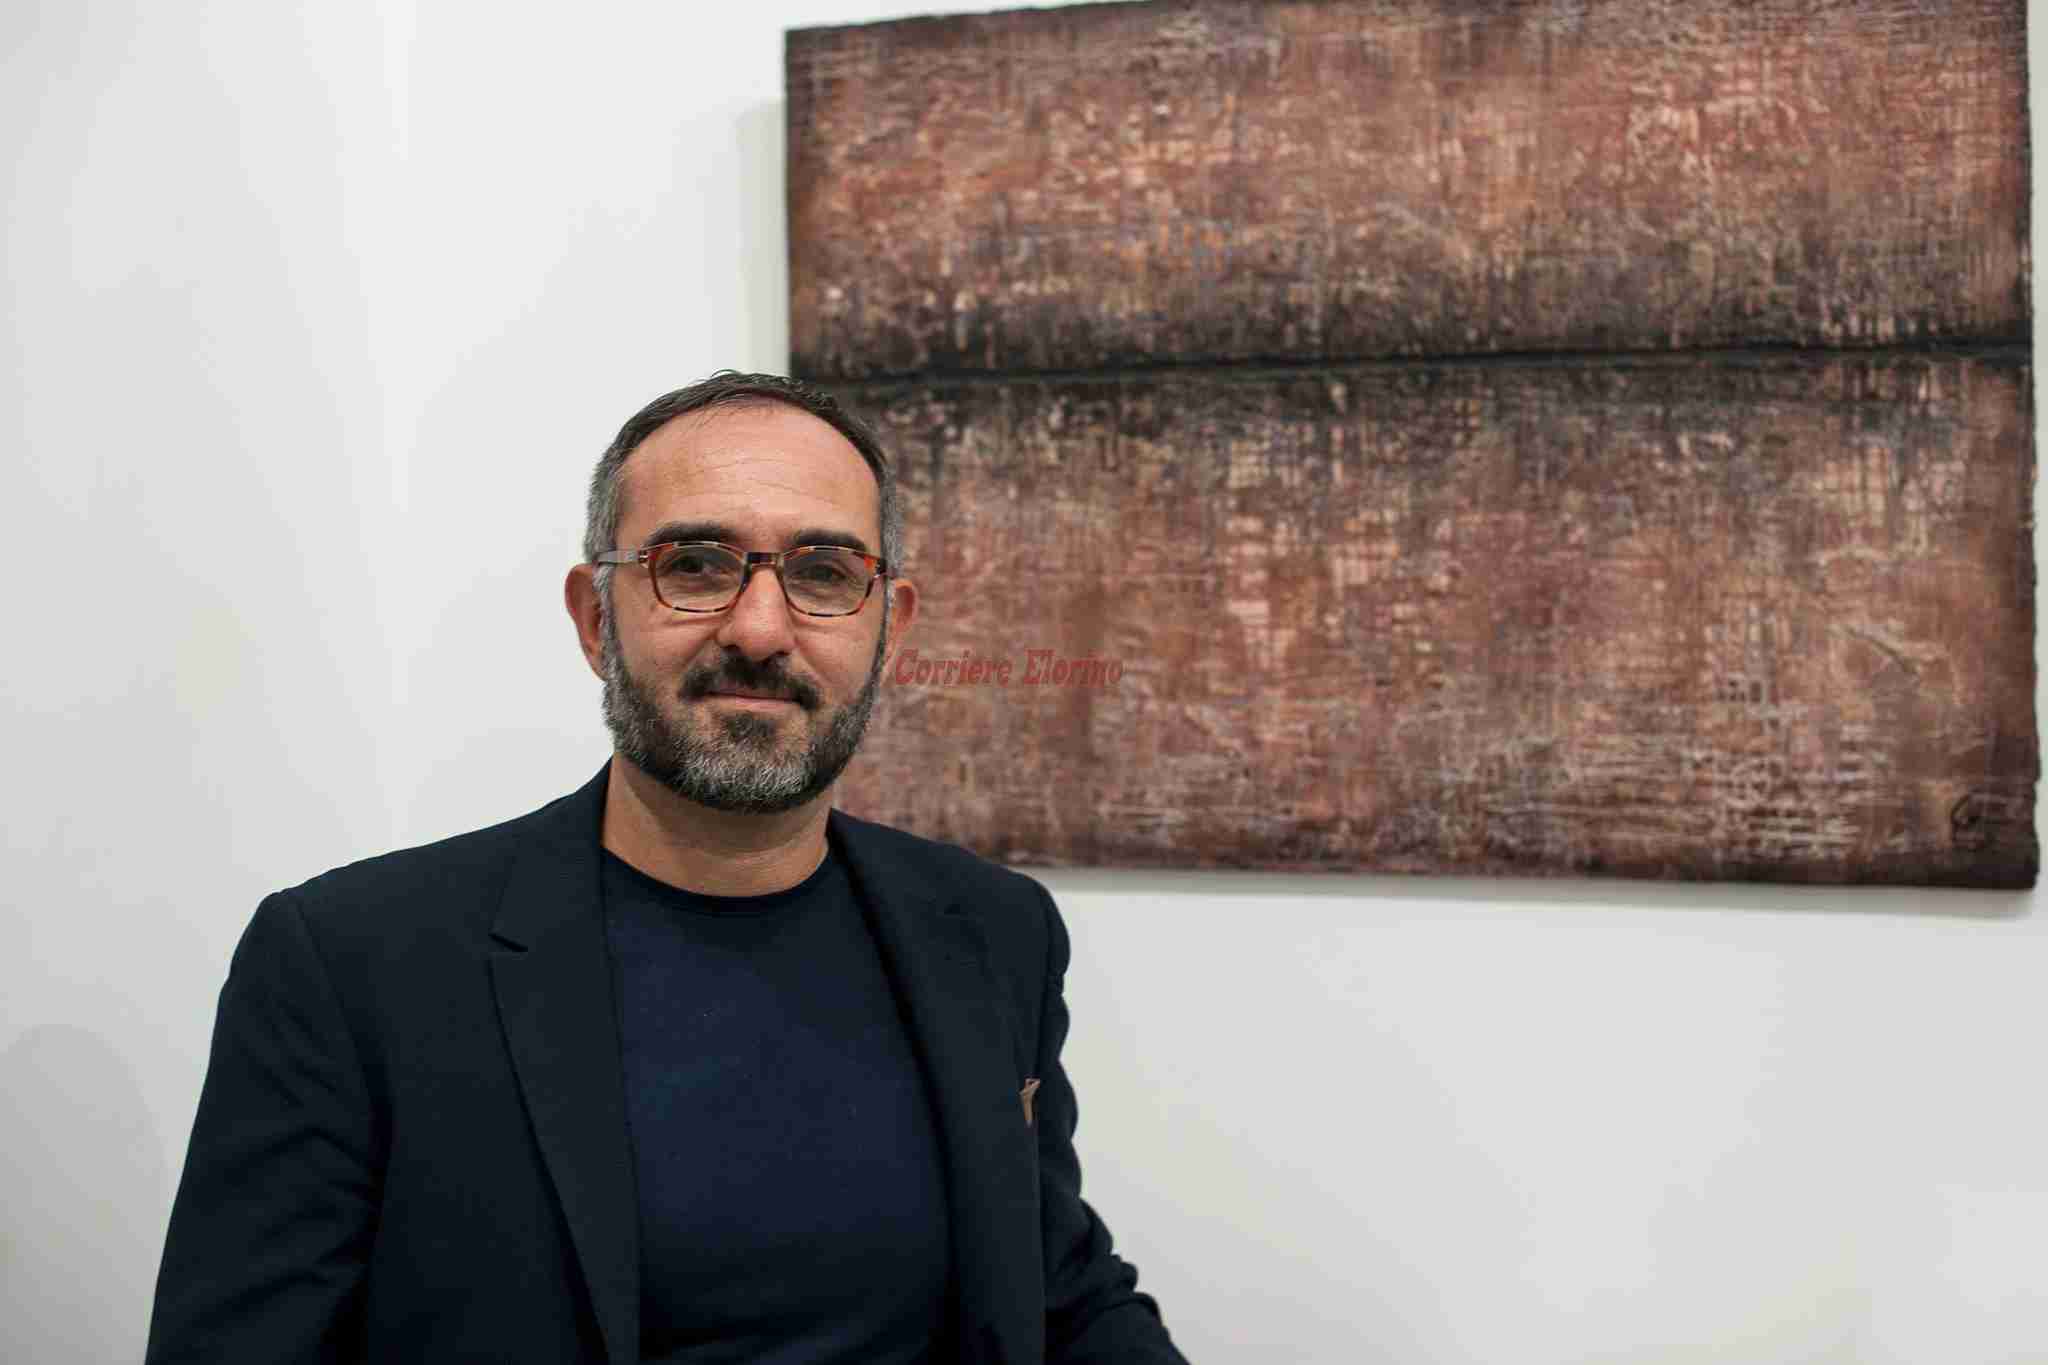 L’artista Giampaolo Cataudella espone a Napoli dal 10 al 24 febbraio